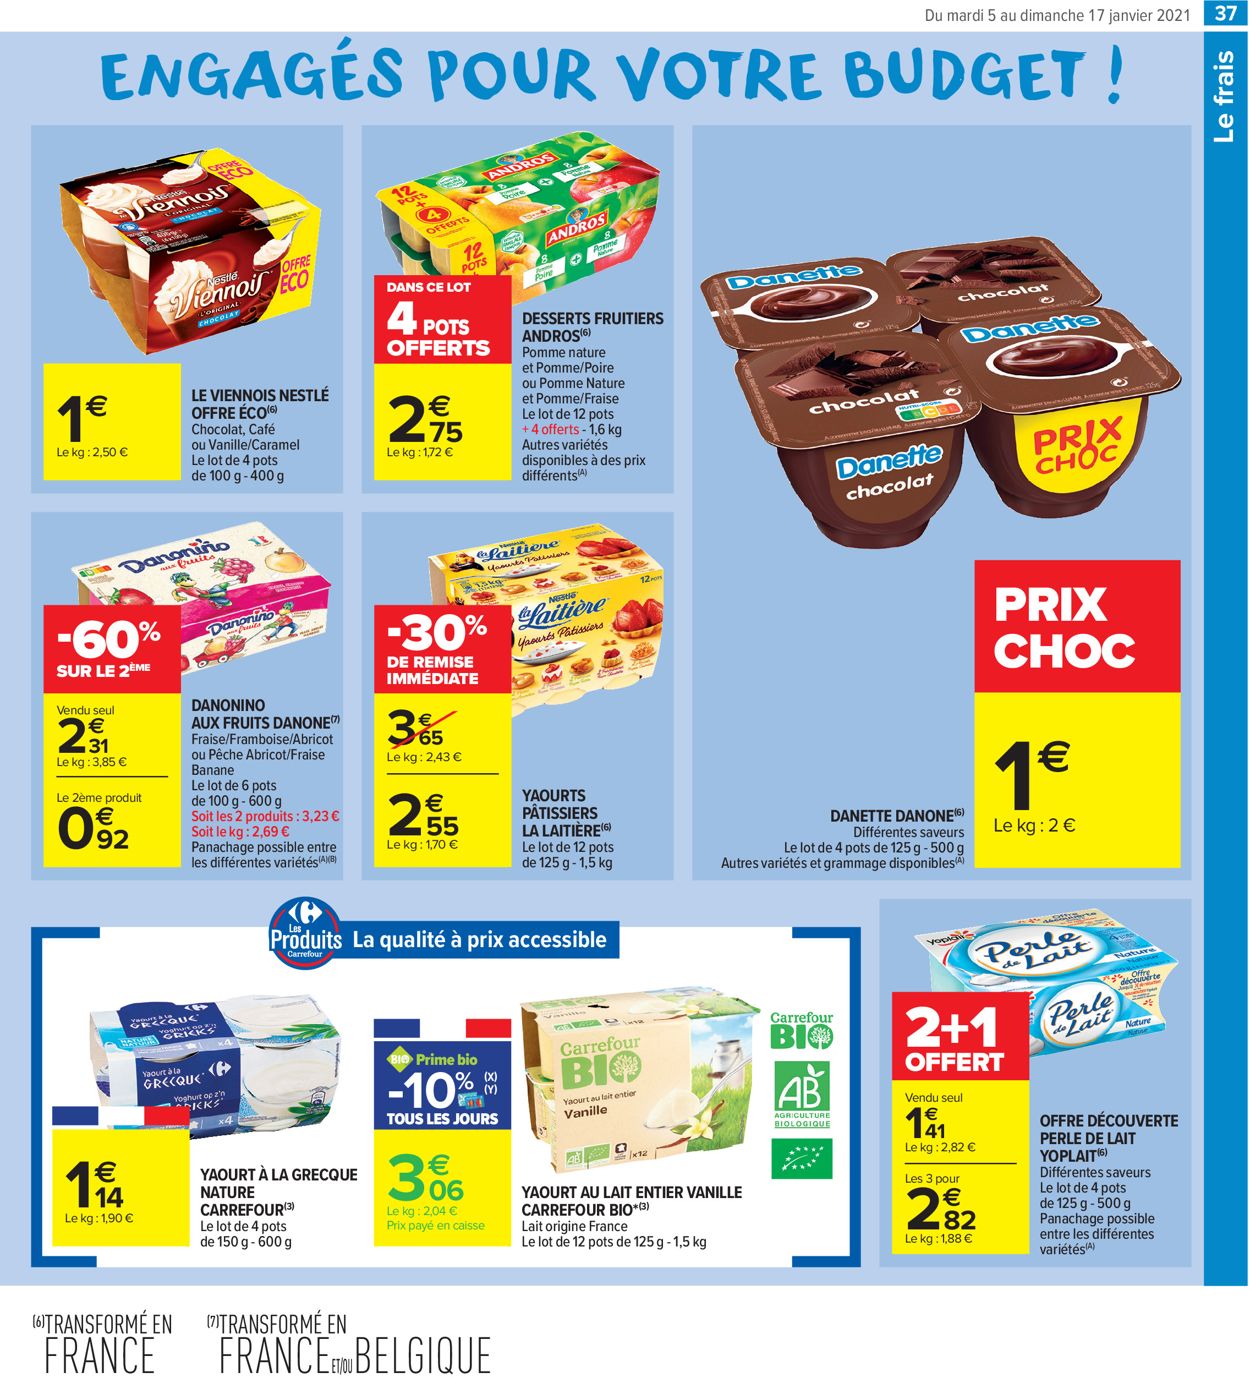 Carrefour Résolument engagés pour votre budget 2021 Catalogue - 05.01-17.01.2021 (Page 37)